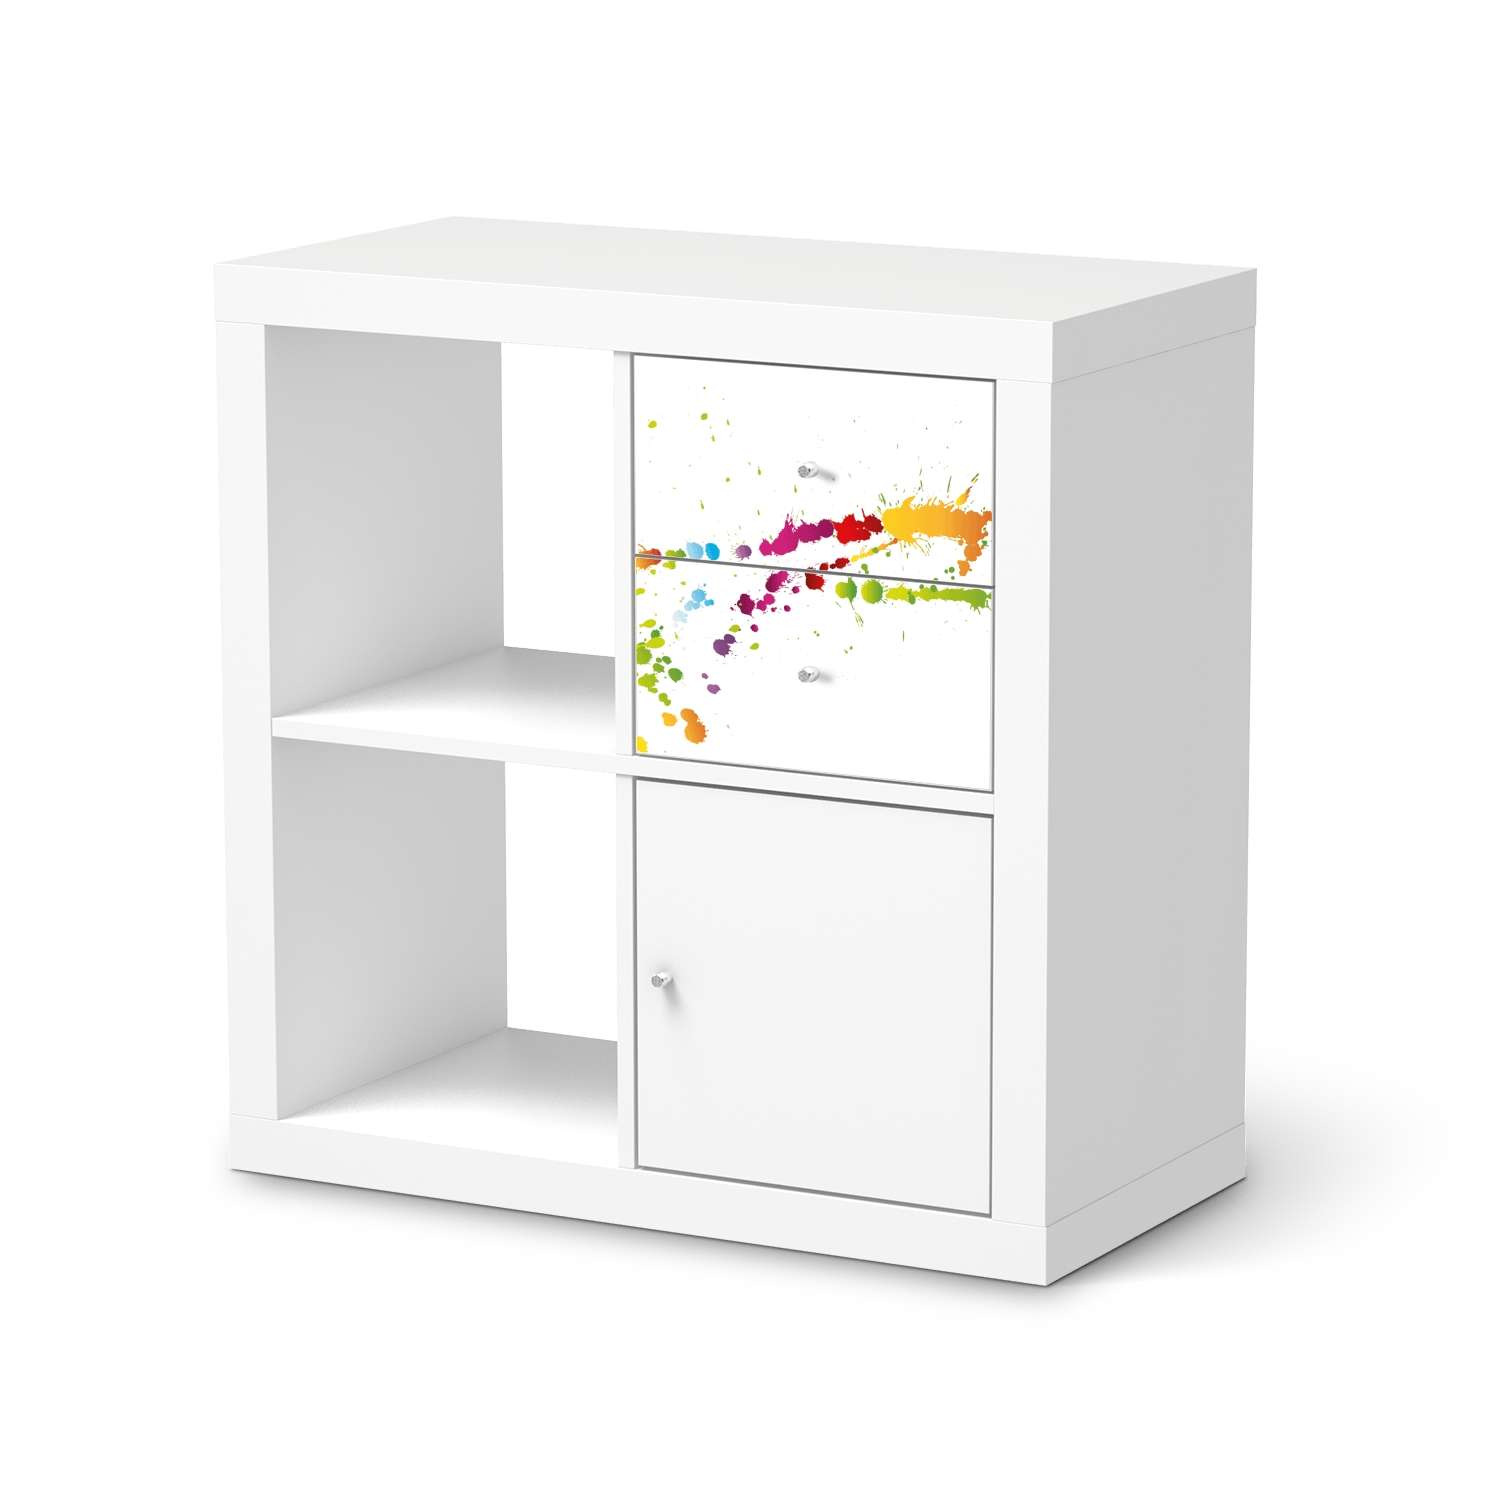 M?belfolie IKEA Kallax Regal Schubladen - Design: Splash 2 von creatisto